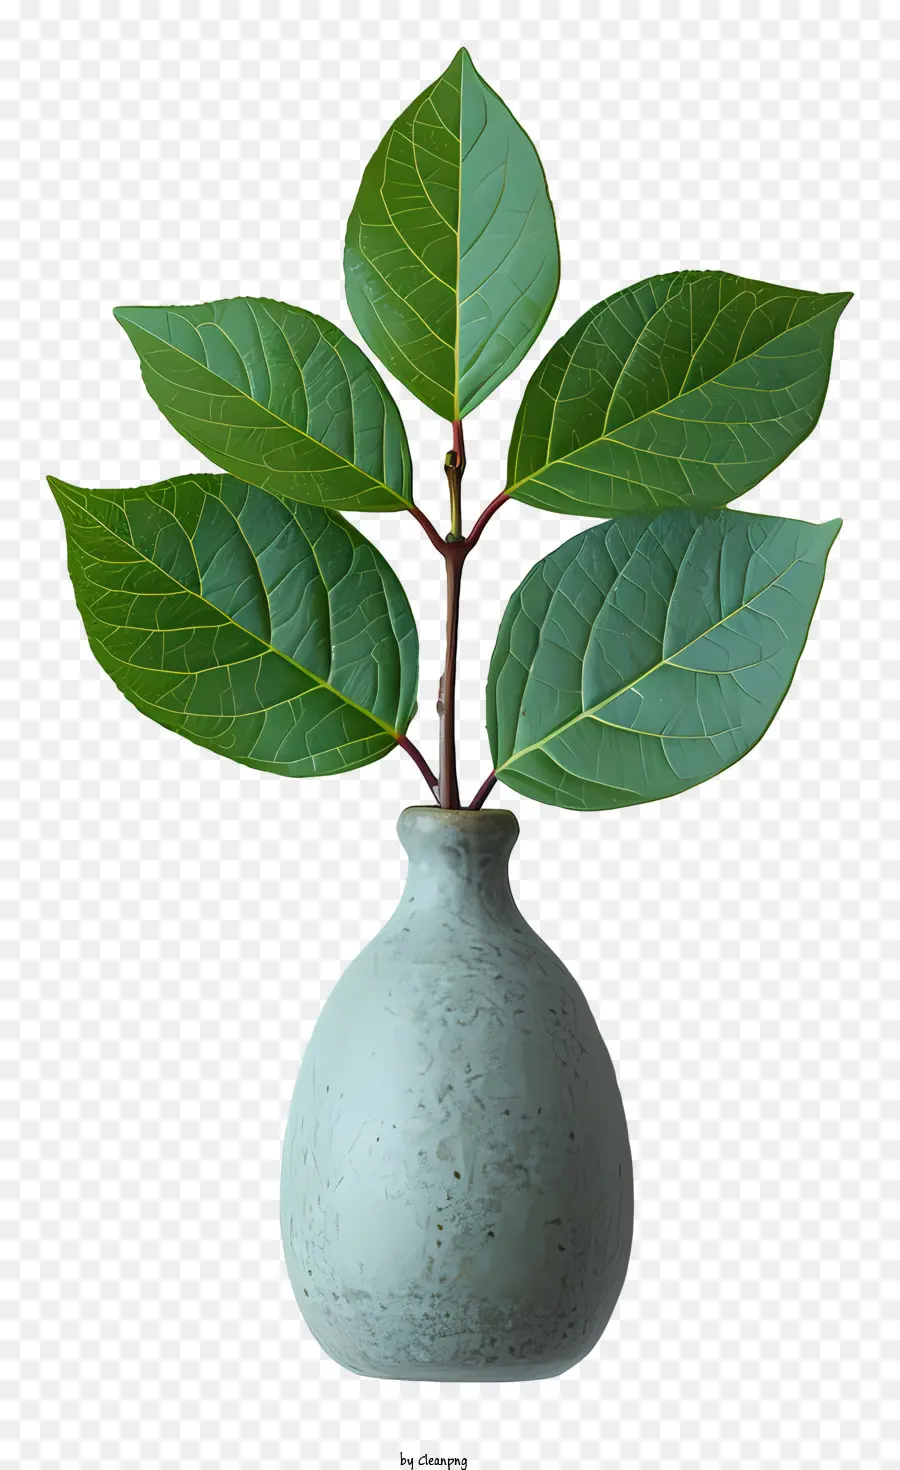 Vỏ cây xanh lá hoa bình nền màu đen lá - Cây xanh nhỏ mọc trong bình, phát triển mạnh